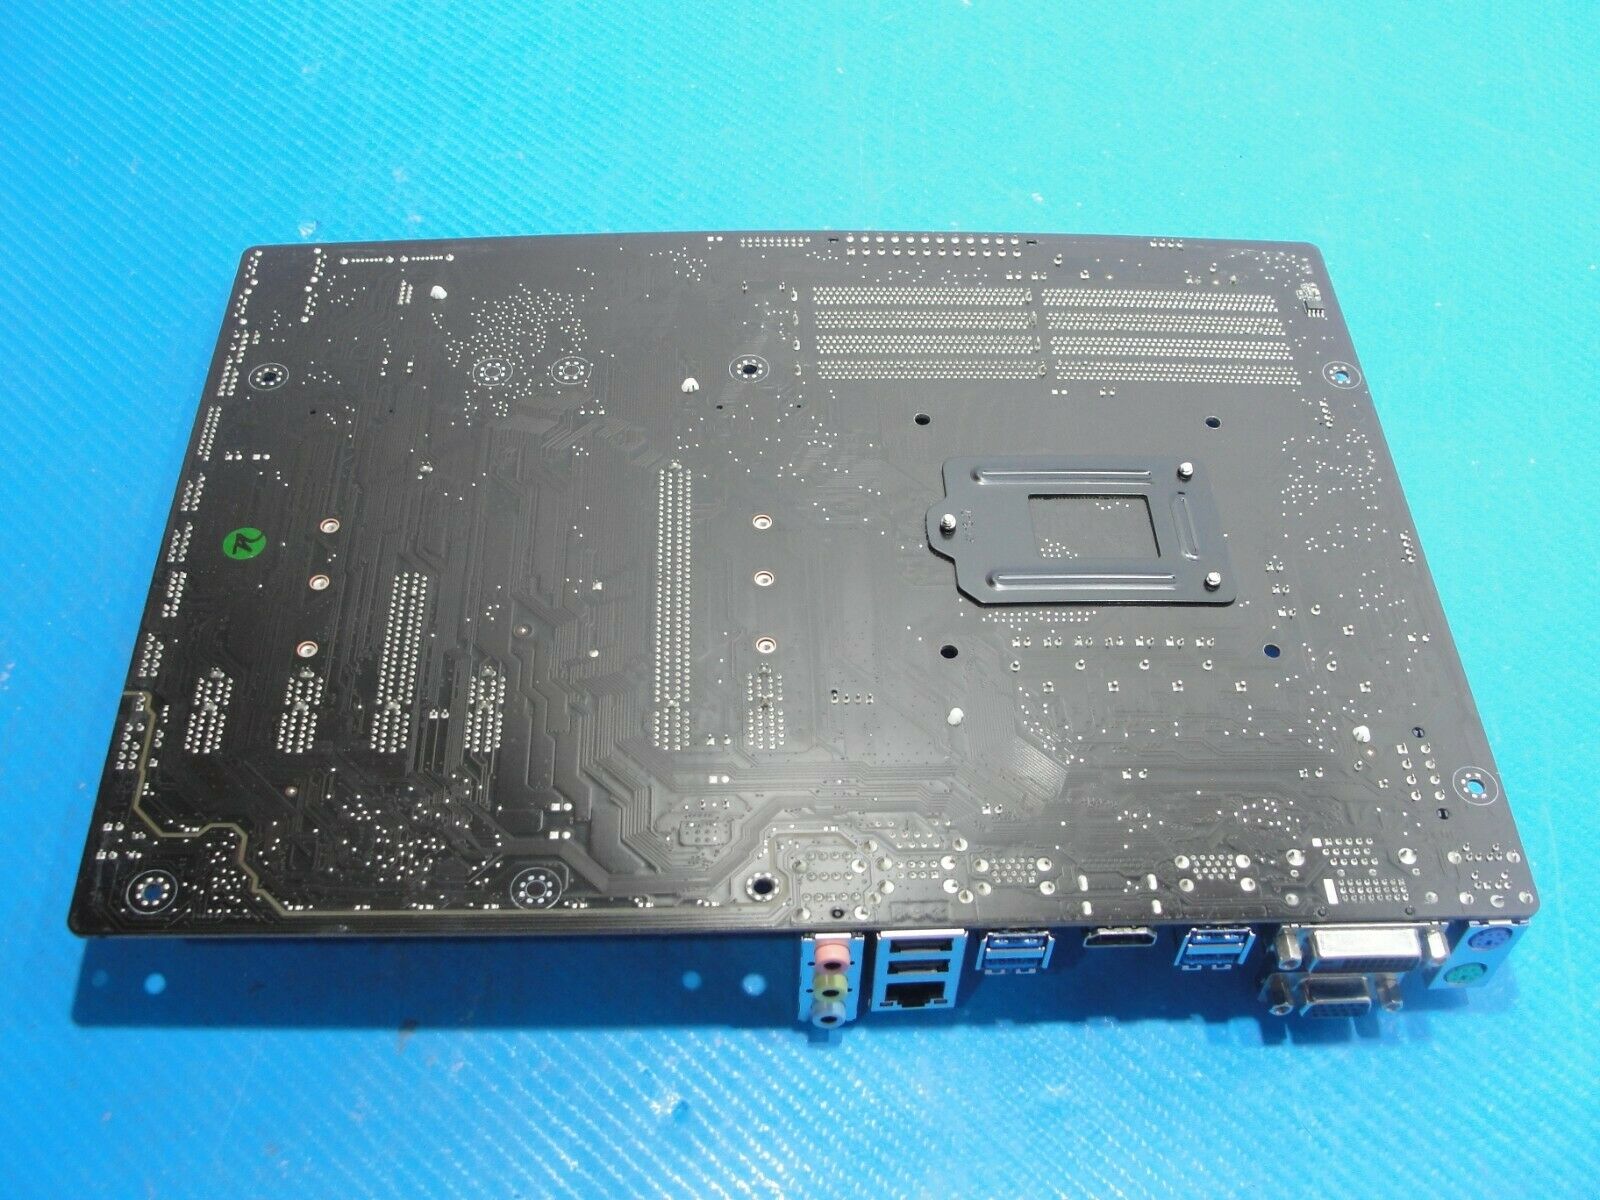 iBuyPower i-Series 504 OEM ASUS Intel Motherboard AS IS Prime H270-PLUS AS IS iBuyPower